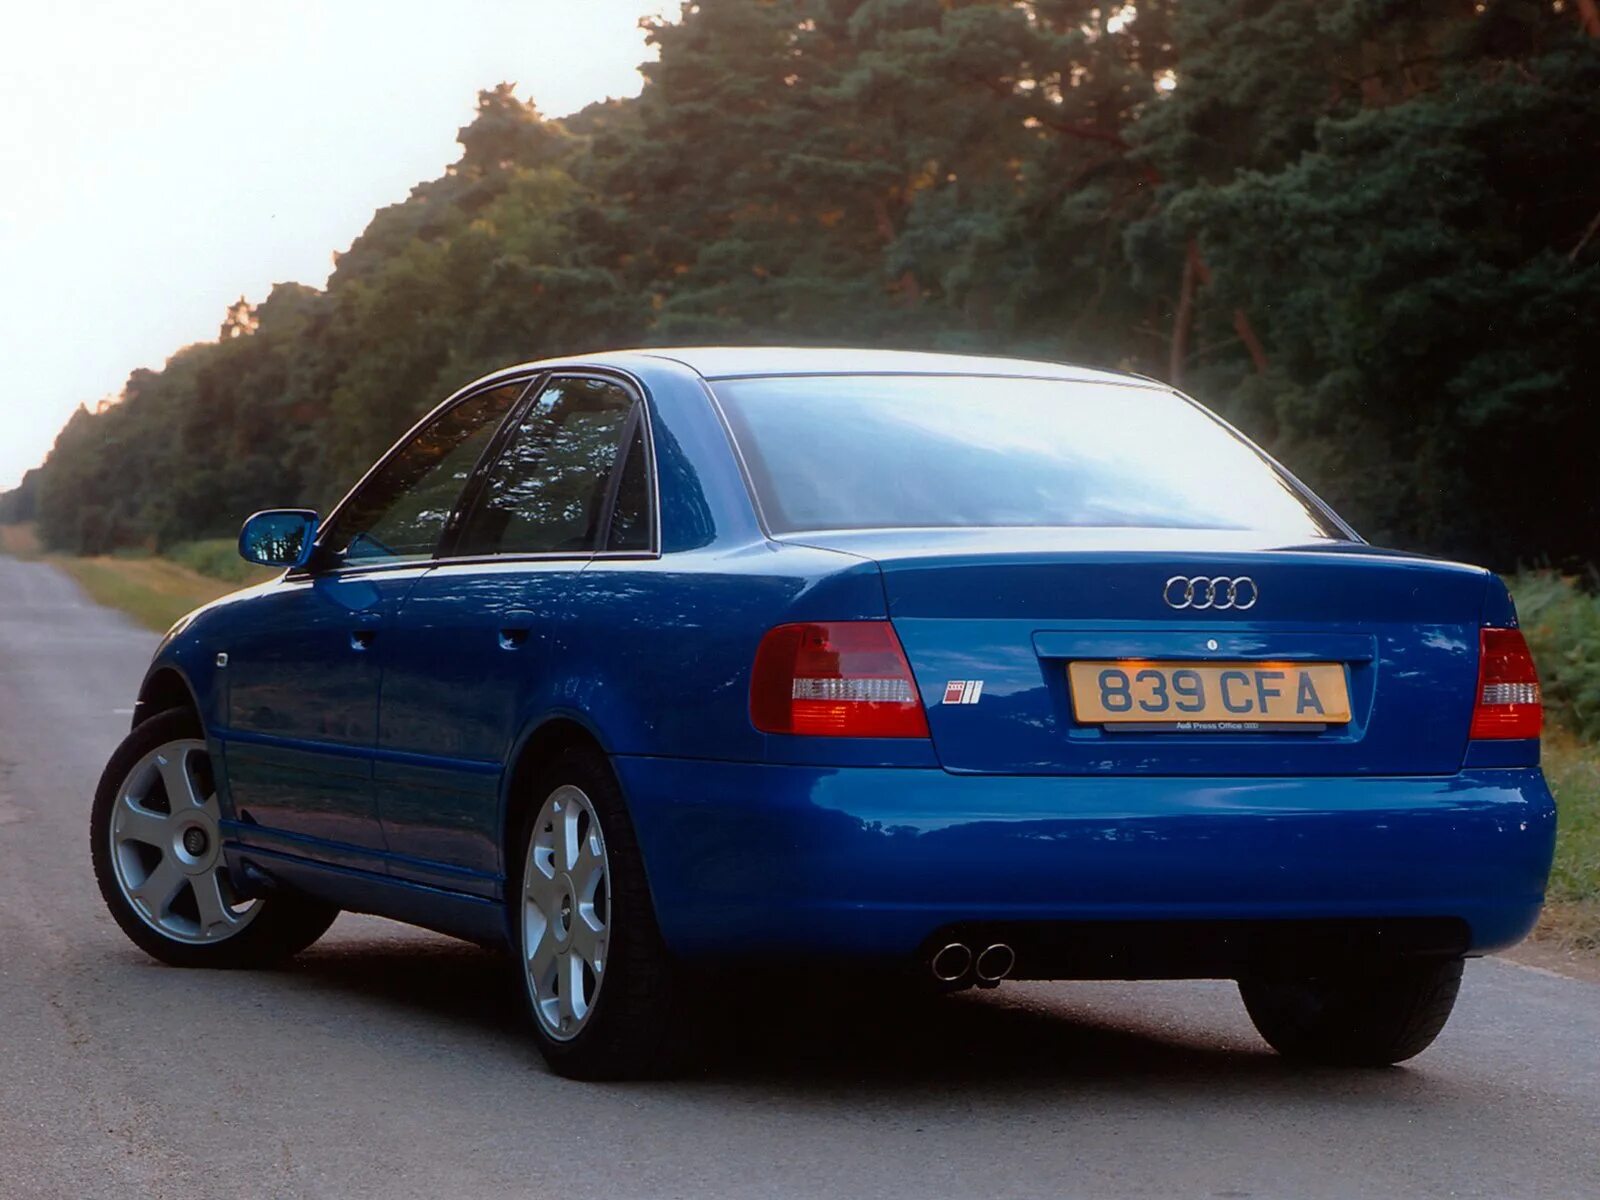 Ауди а4 б5 2000 года. Audi a4 b5 2000. Ауди s4 1996. Audi s4 1997. Audi a4 b5 1996.